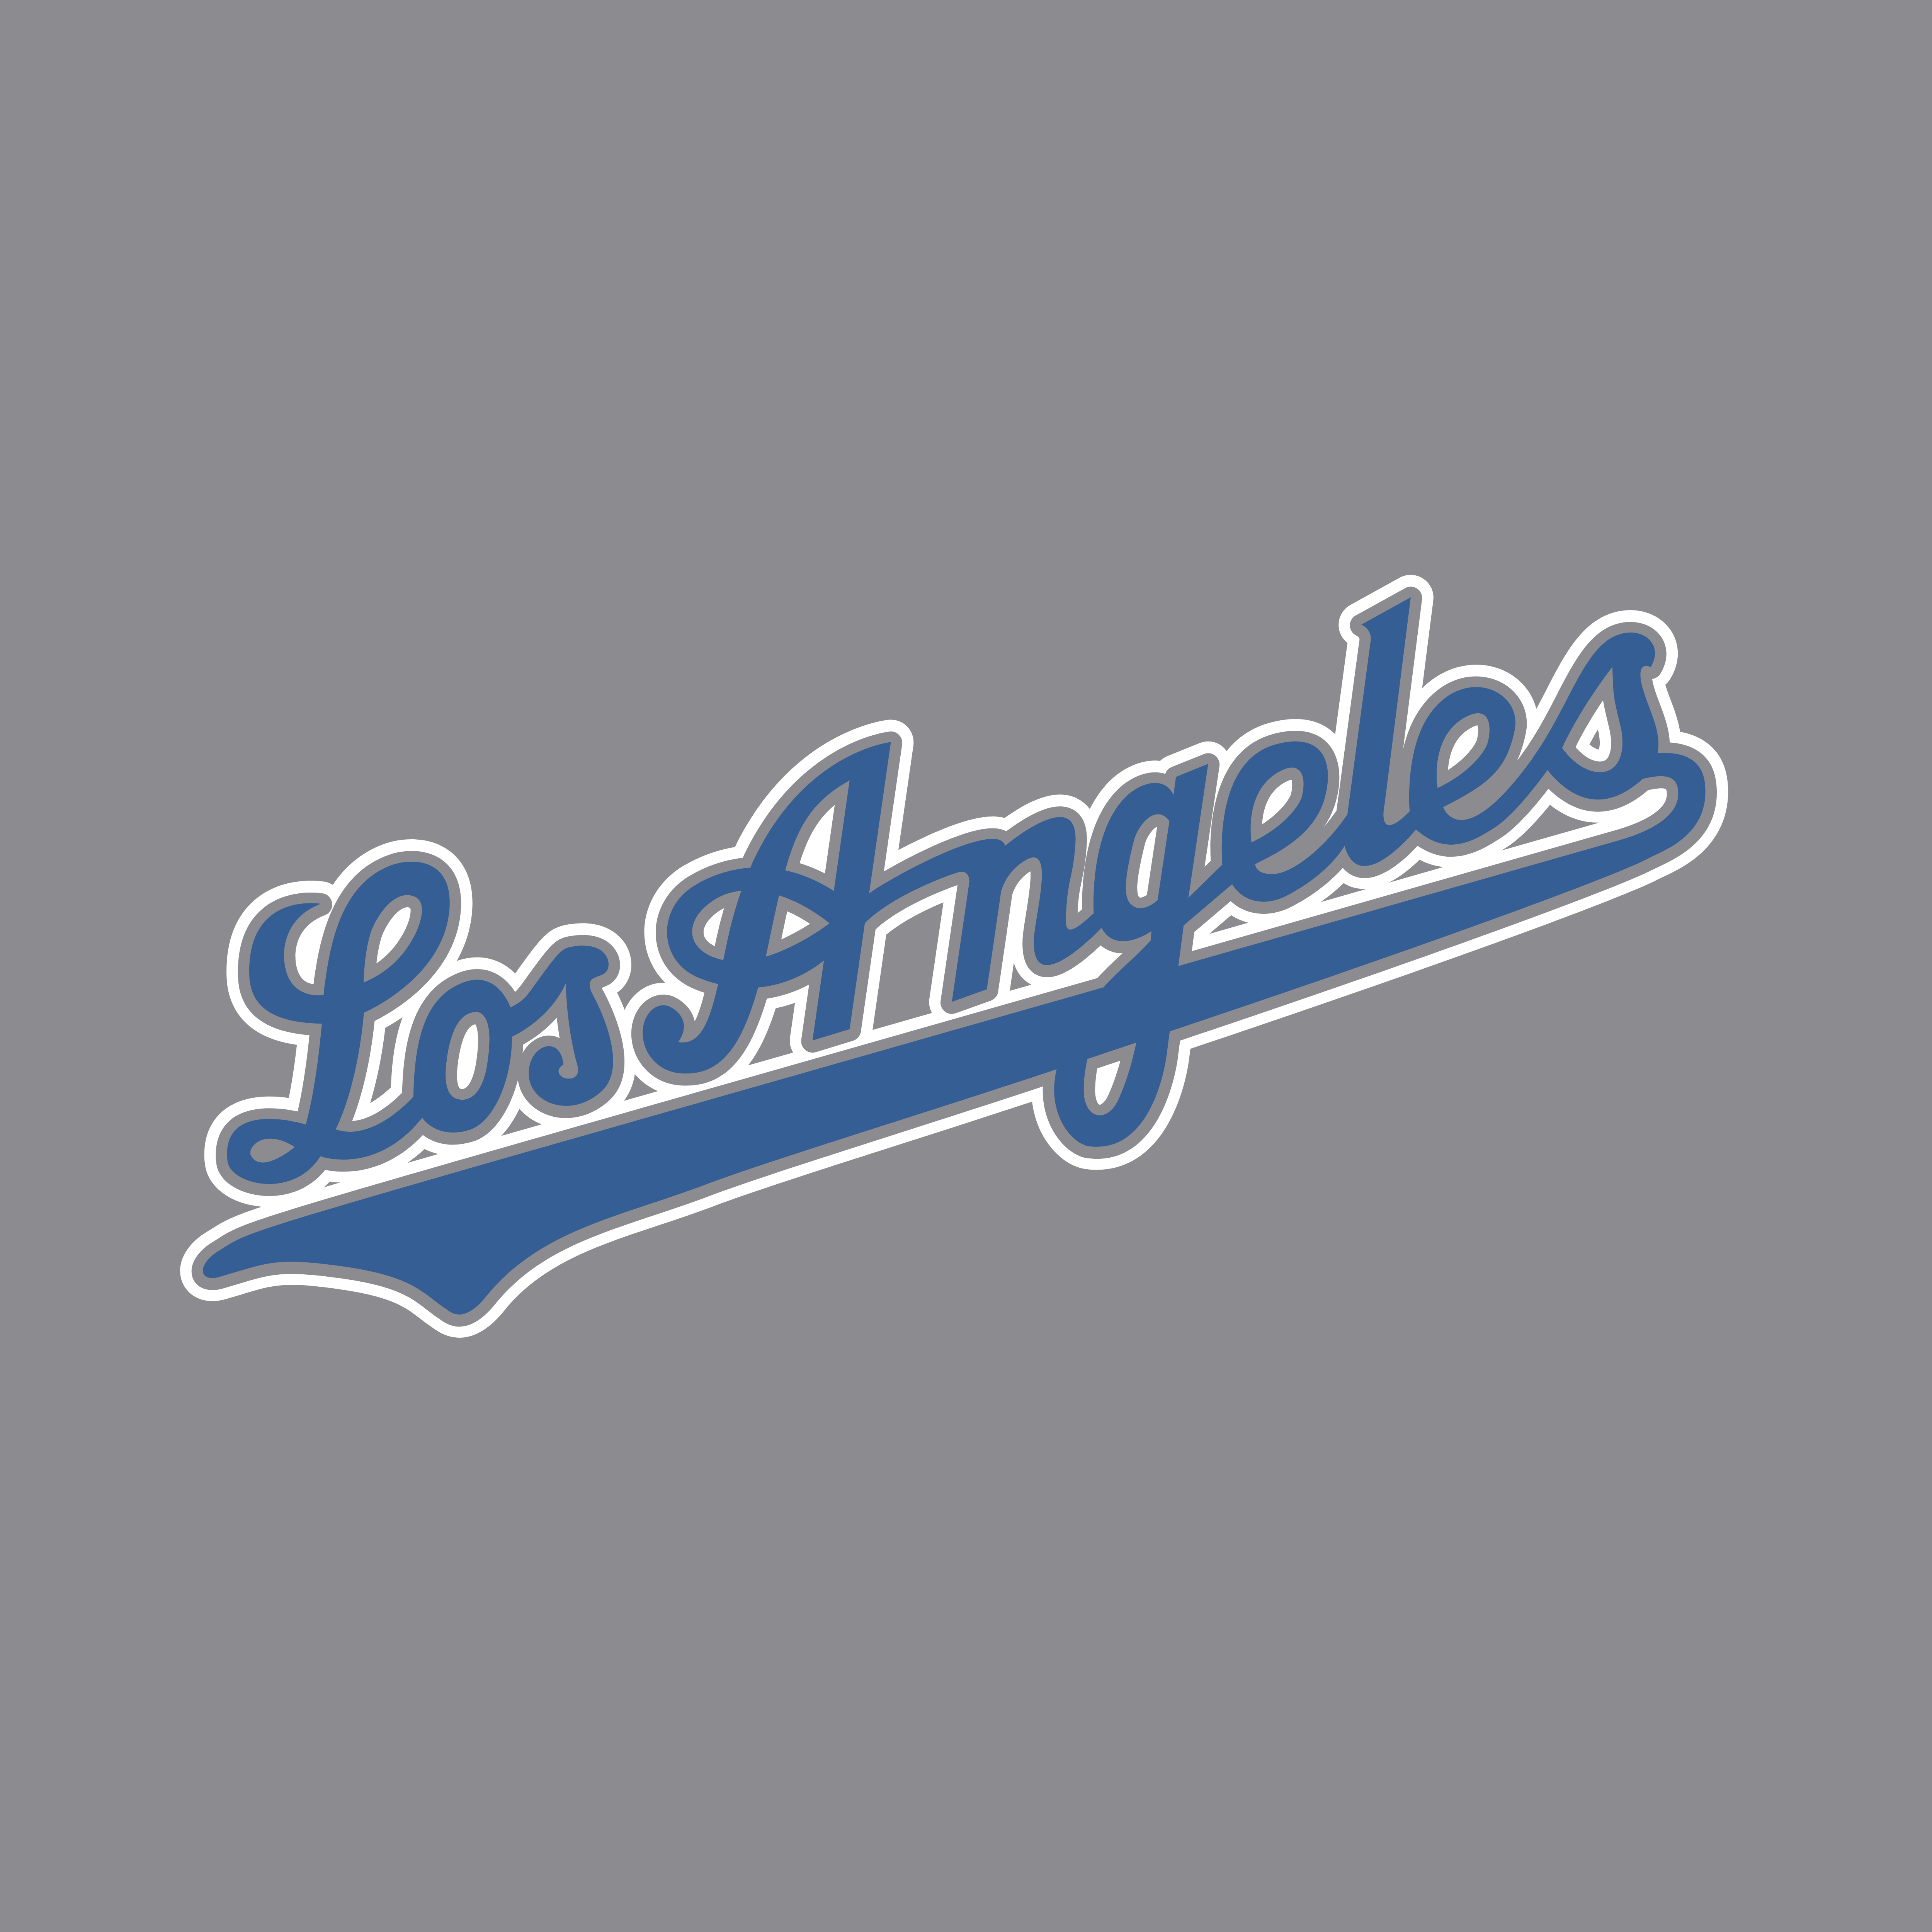 Los Angeles Logo - Los Angeles Dodgers – Logos Download